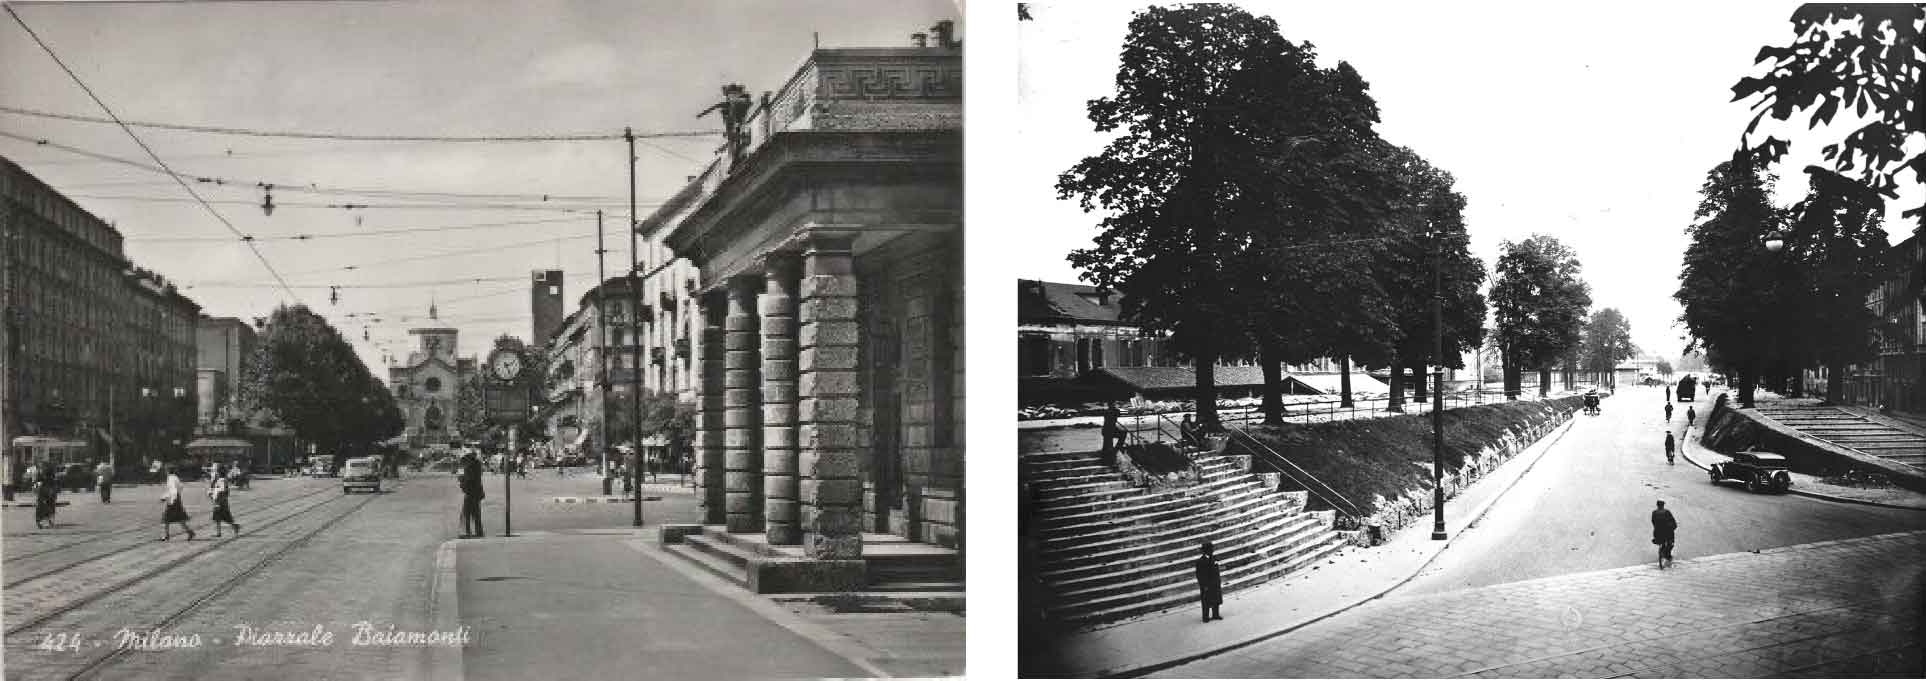 Da sinistra, una cartolina storica di piazzale Baiamonti e le mura spagnole di Milano verso Porta Volta all’inizio del XX secolo